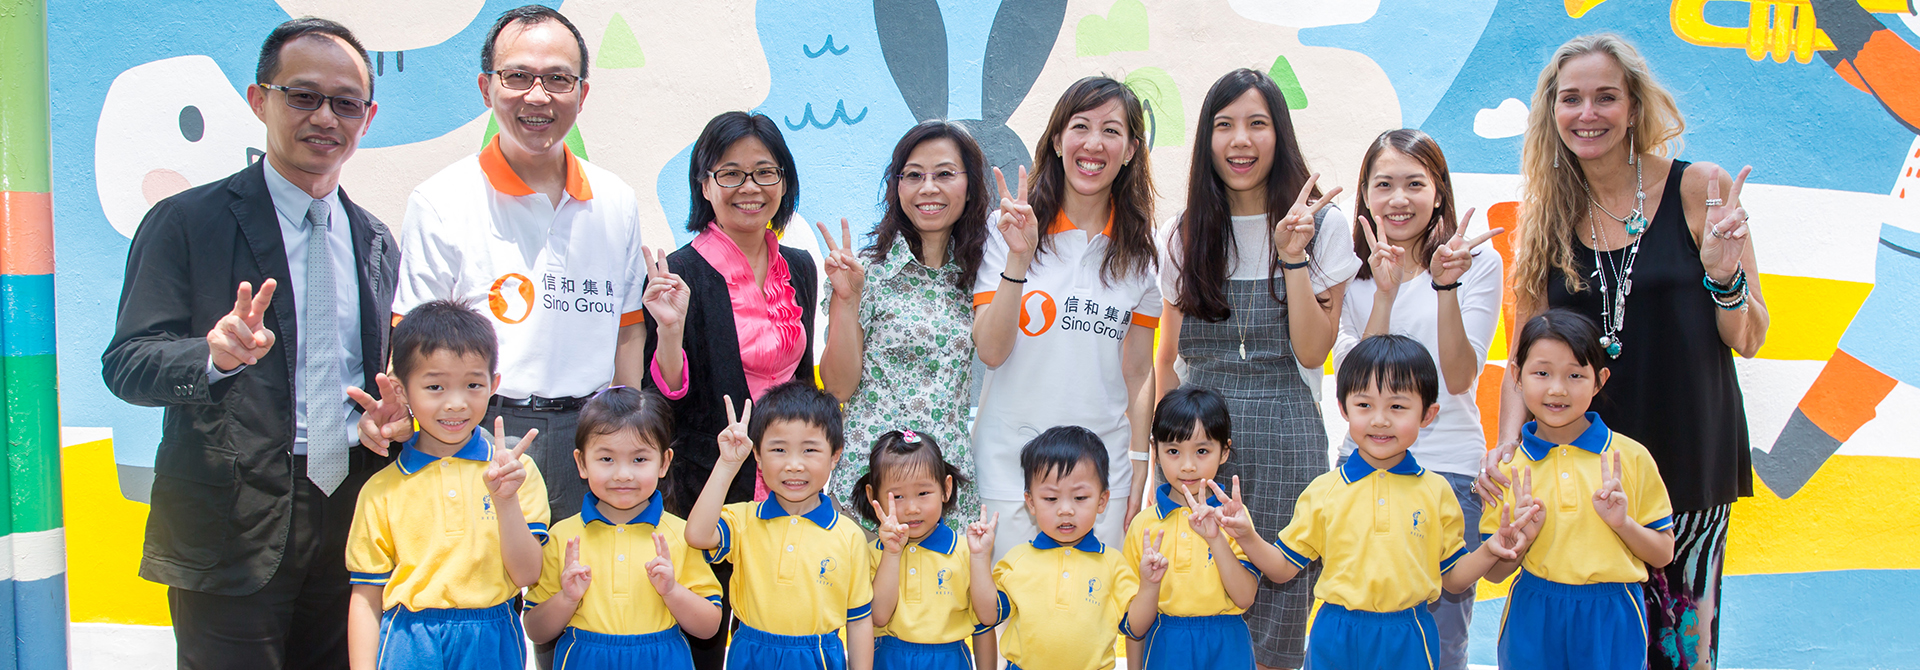 香港保護兒童會馬頭涌幼兒學校 